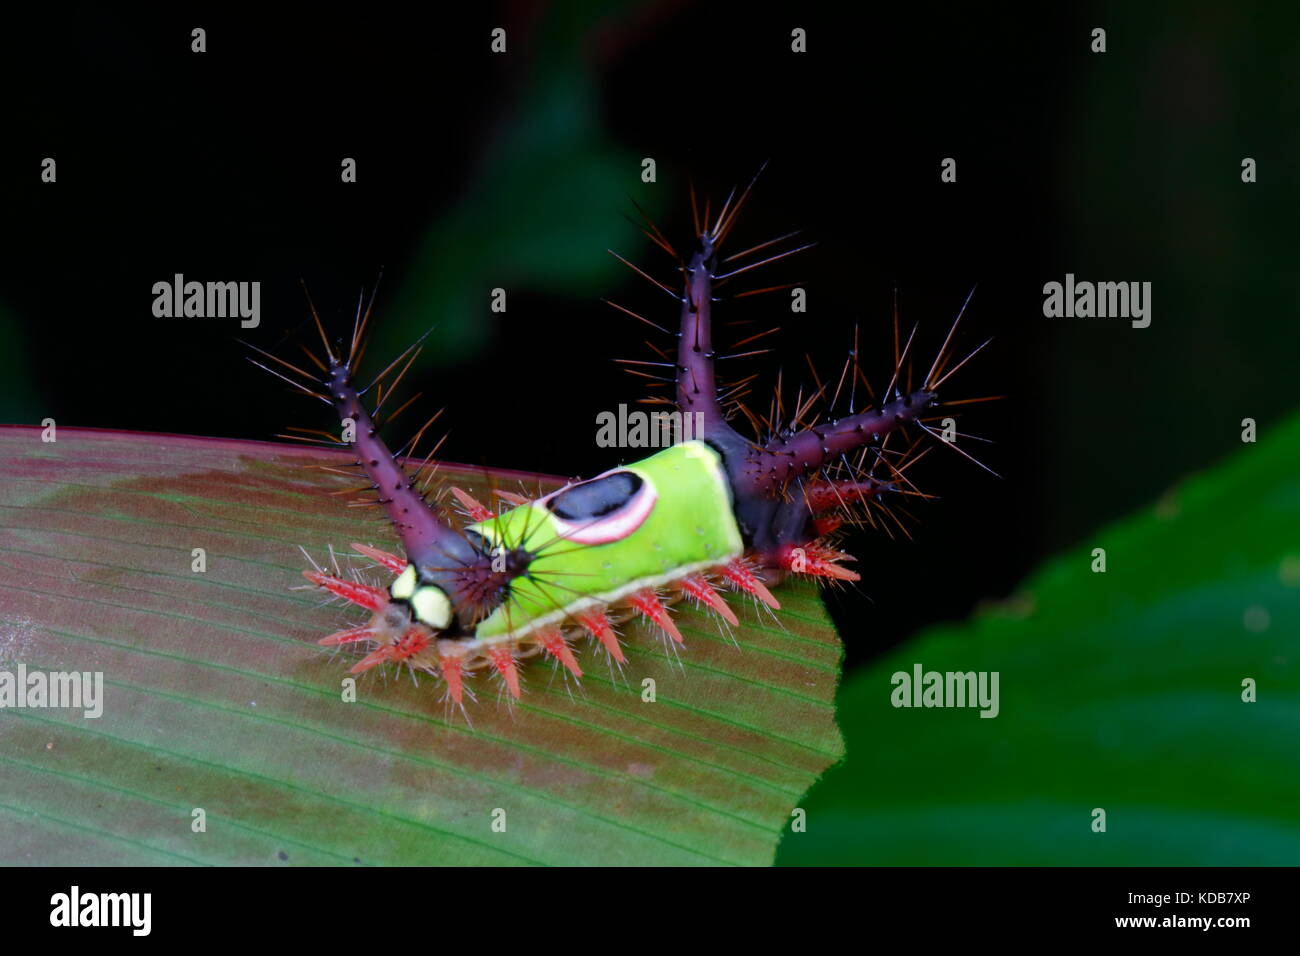 Un Hyperoche Acharia saddleback, Caterpillar, sur une feuille. Banque D'Images